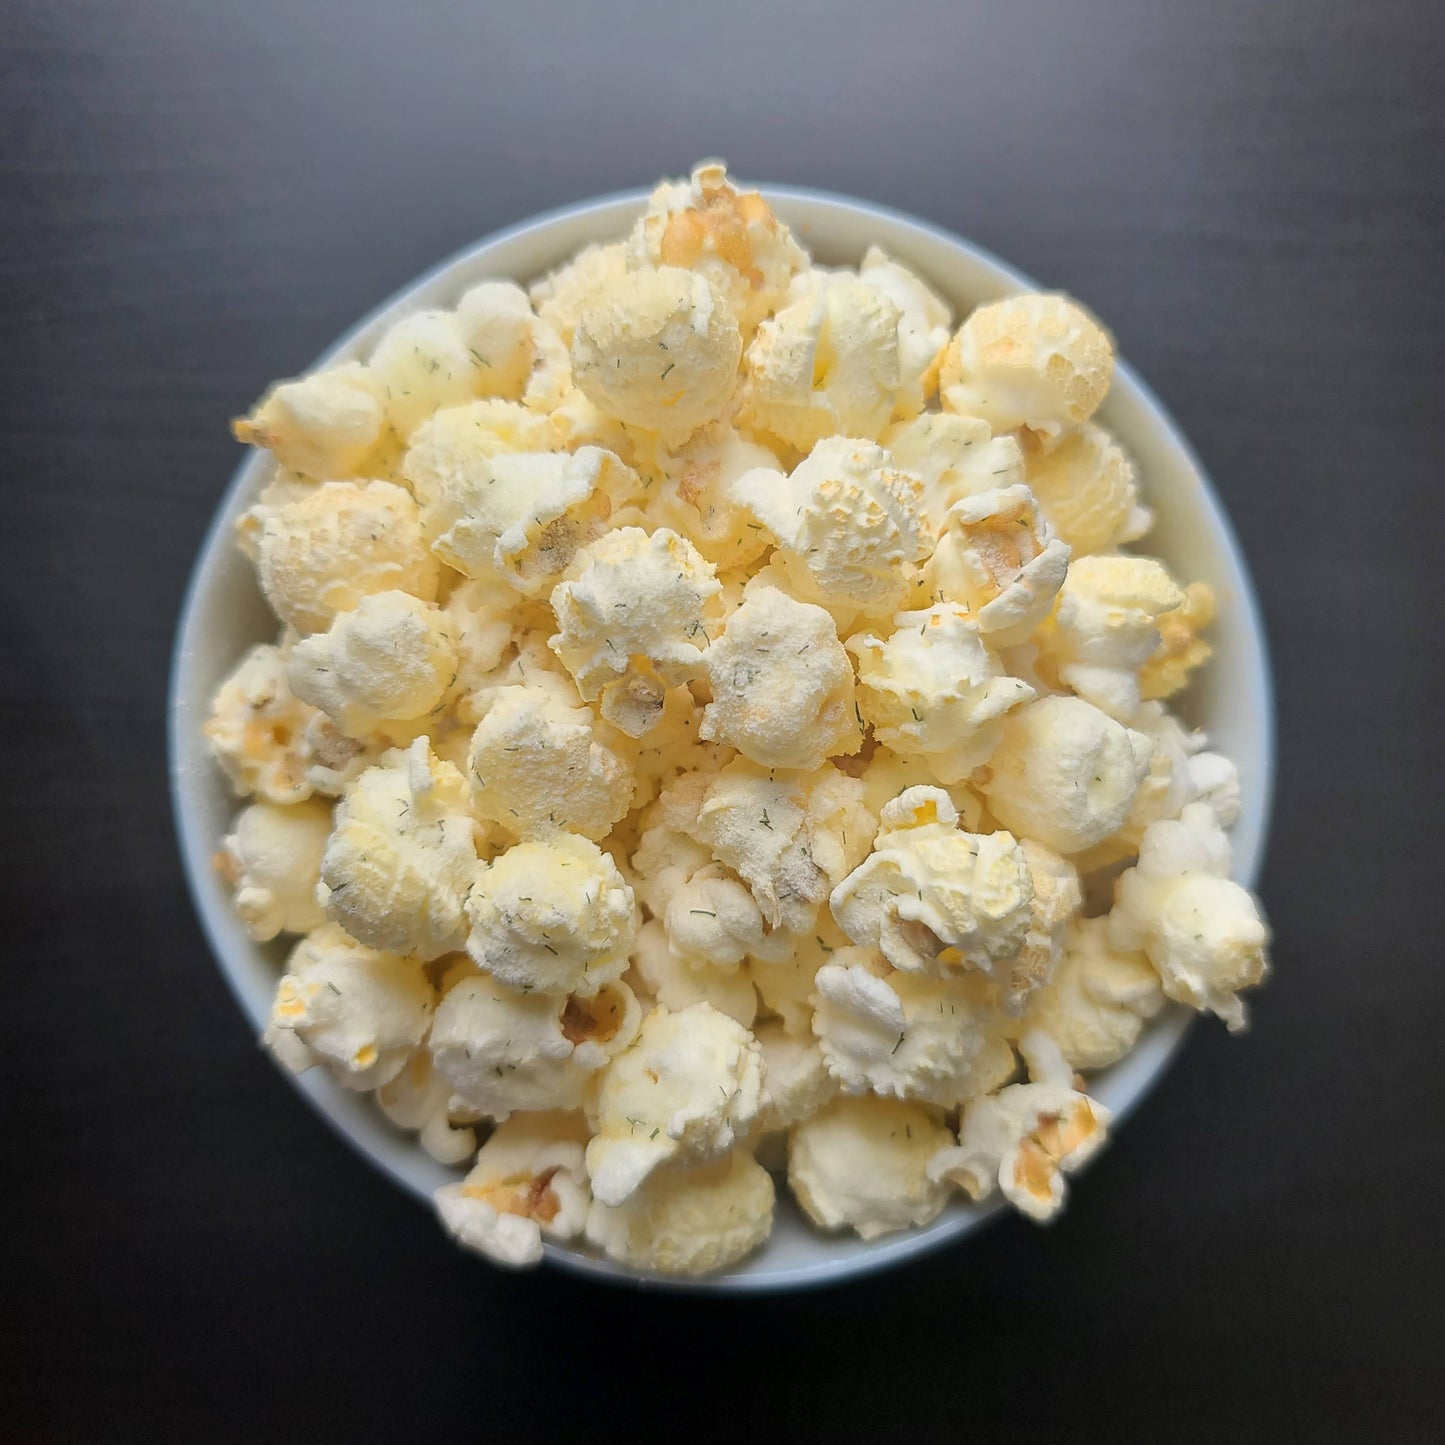 Darryl Evans-Cravings Gourmet Popcorn